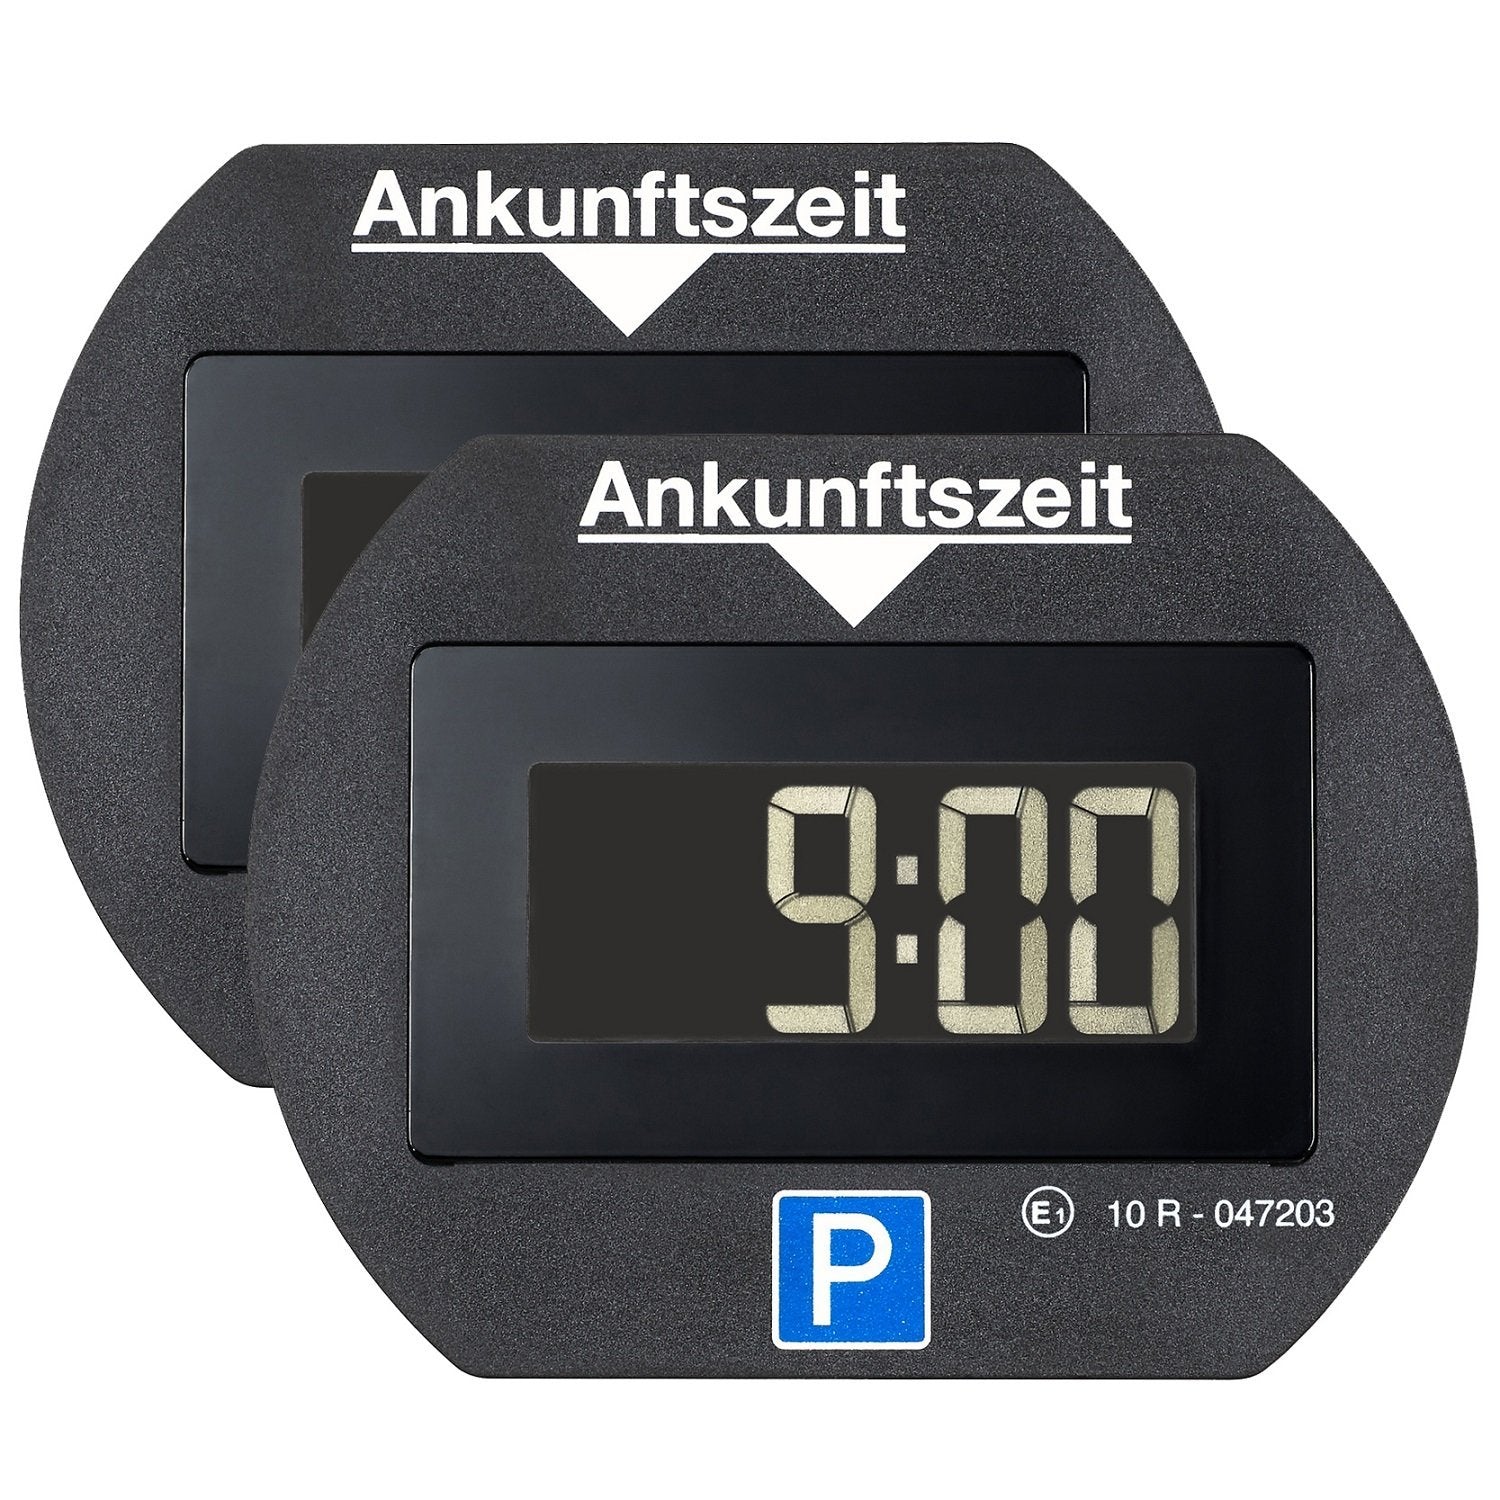 2x Park Lite - Elektronische Parkscheibe - Digitale Parkuhr mit offizi